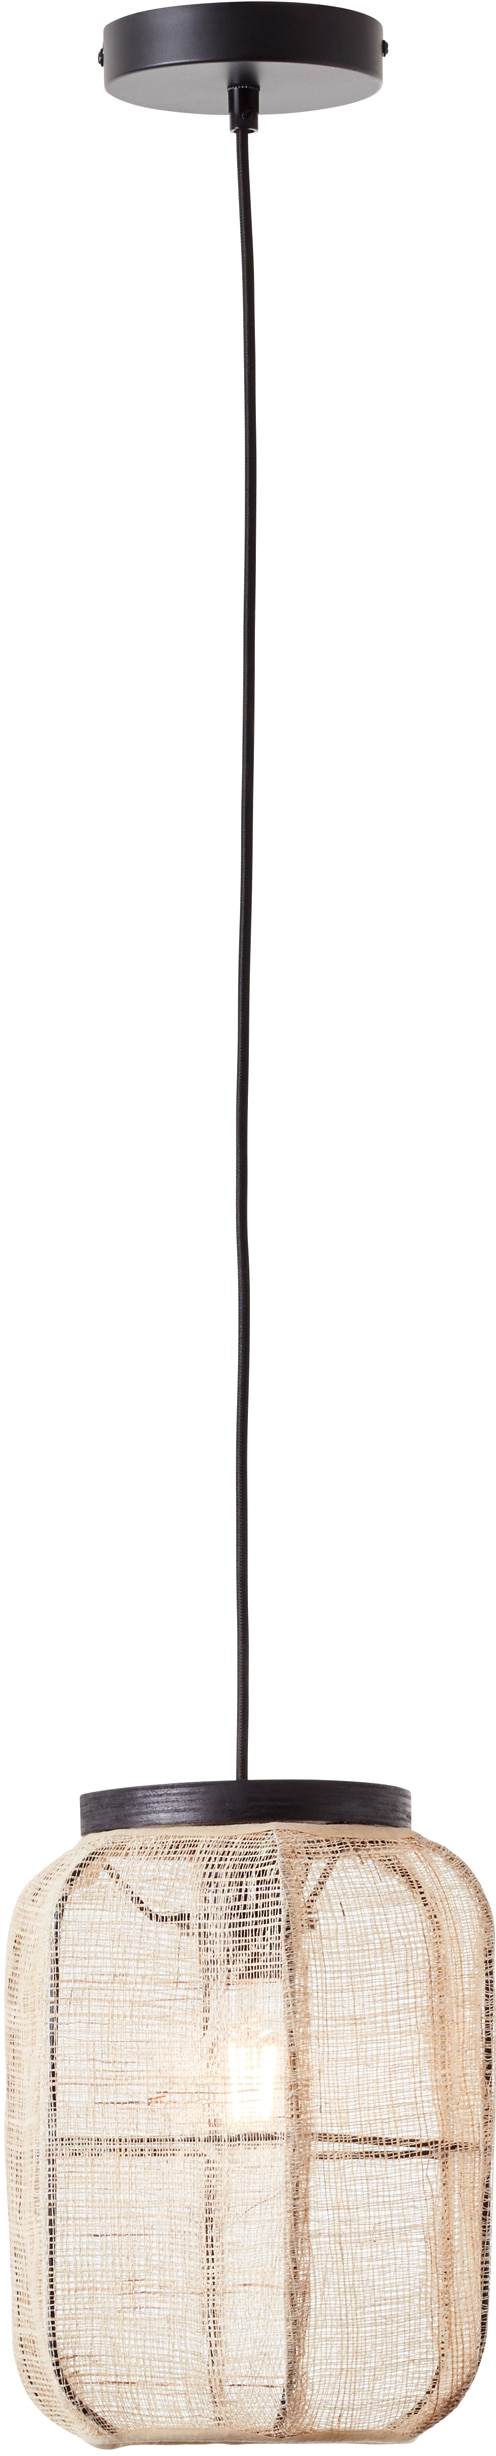 Home affaire Pendelleuchte »Rouez«, 1 flammig-flammig, Hängelampe mit 22cm Durchmesser, Schirm aus Textil und Holz